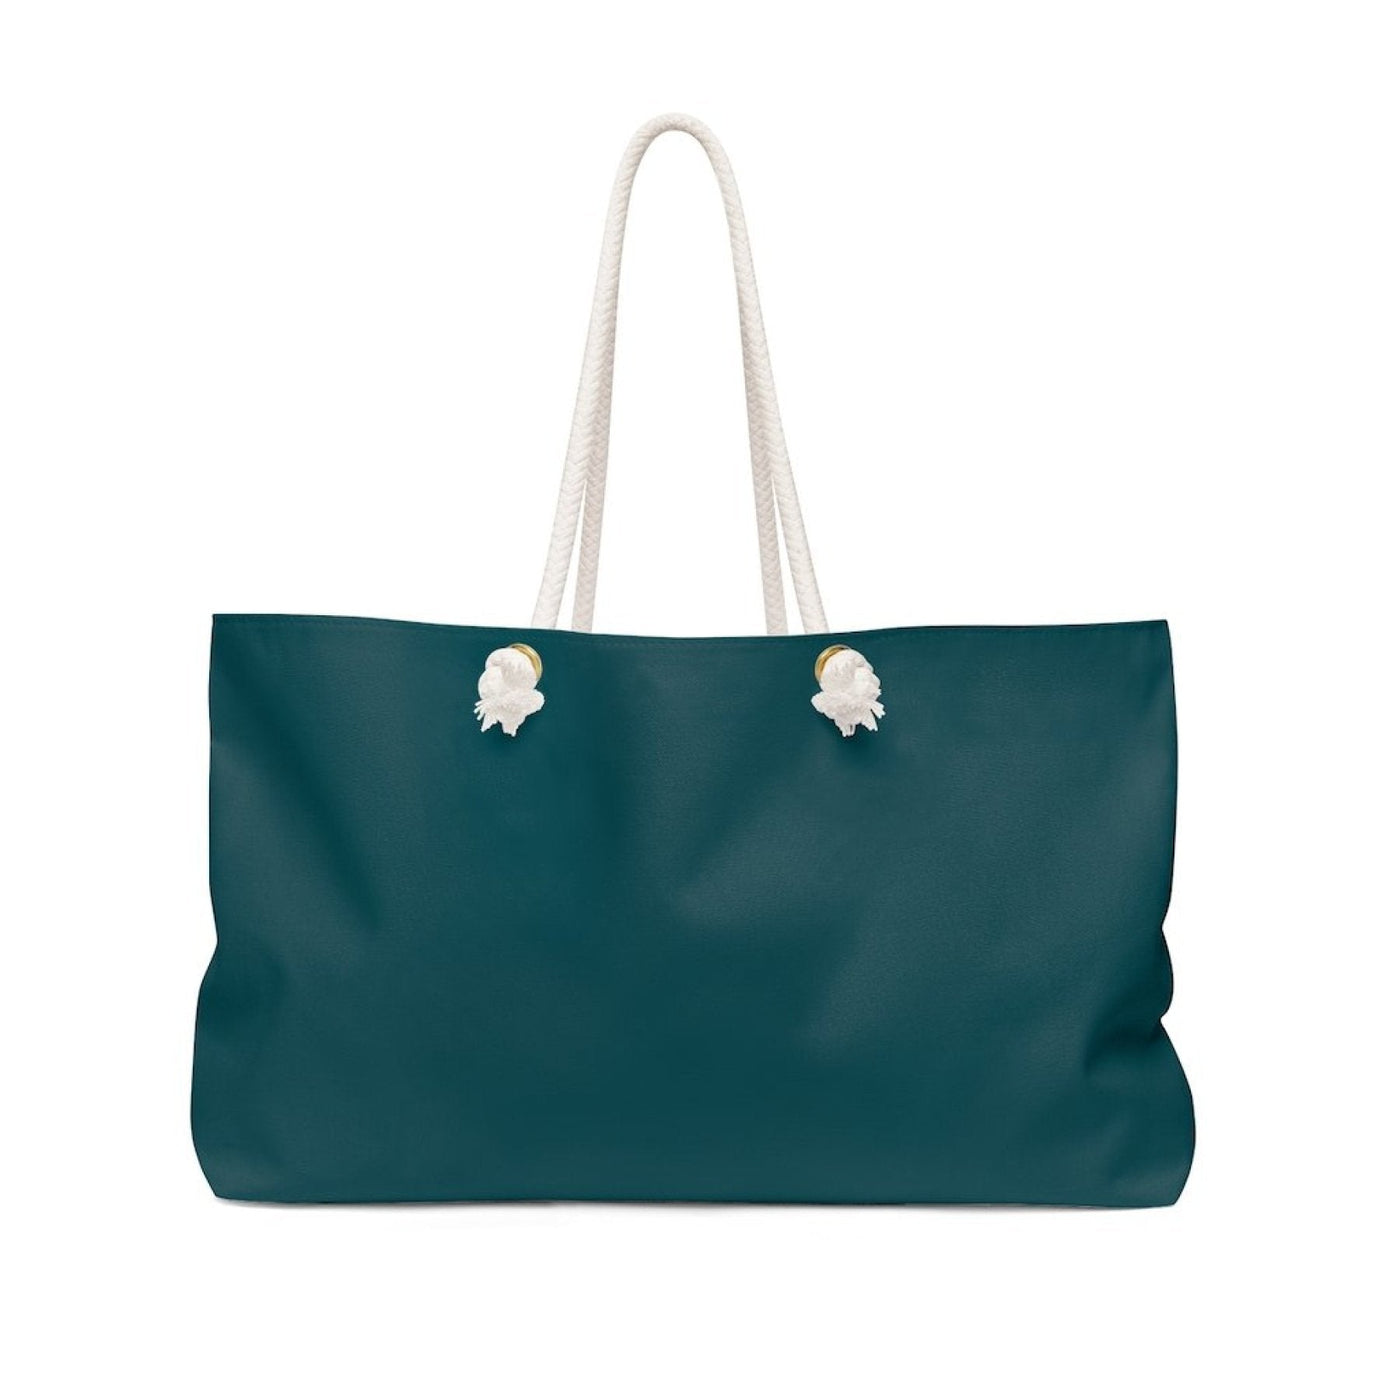 Marine Green Handbag Weekender Tote Bag - Bags | Tote Bags | Weekender